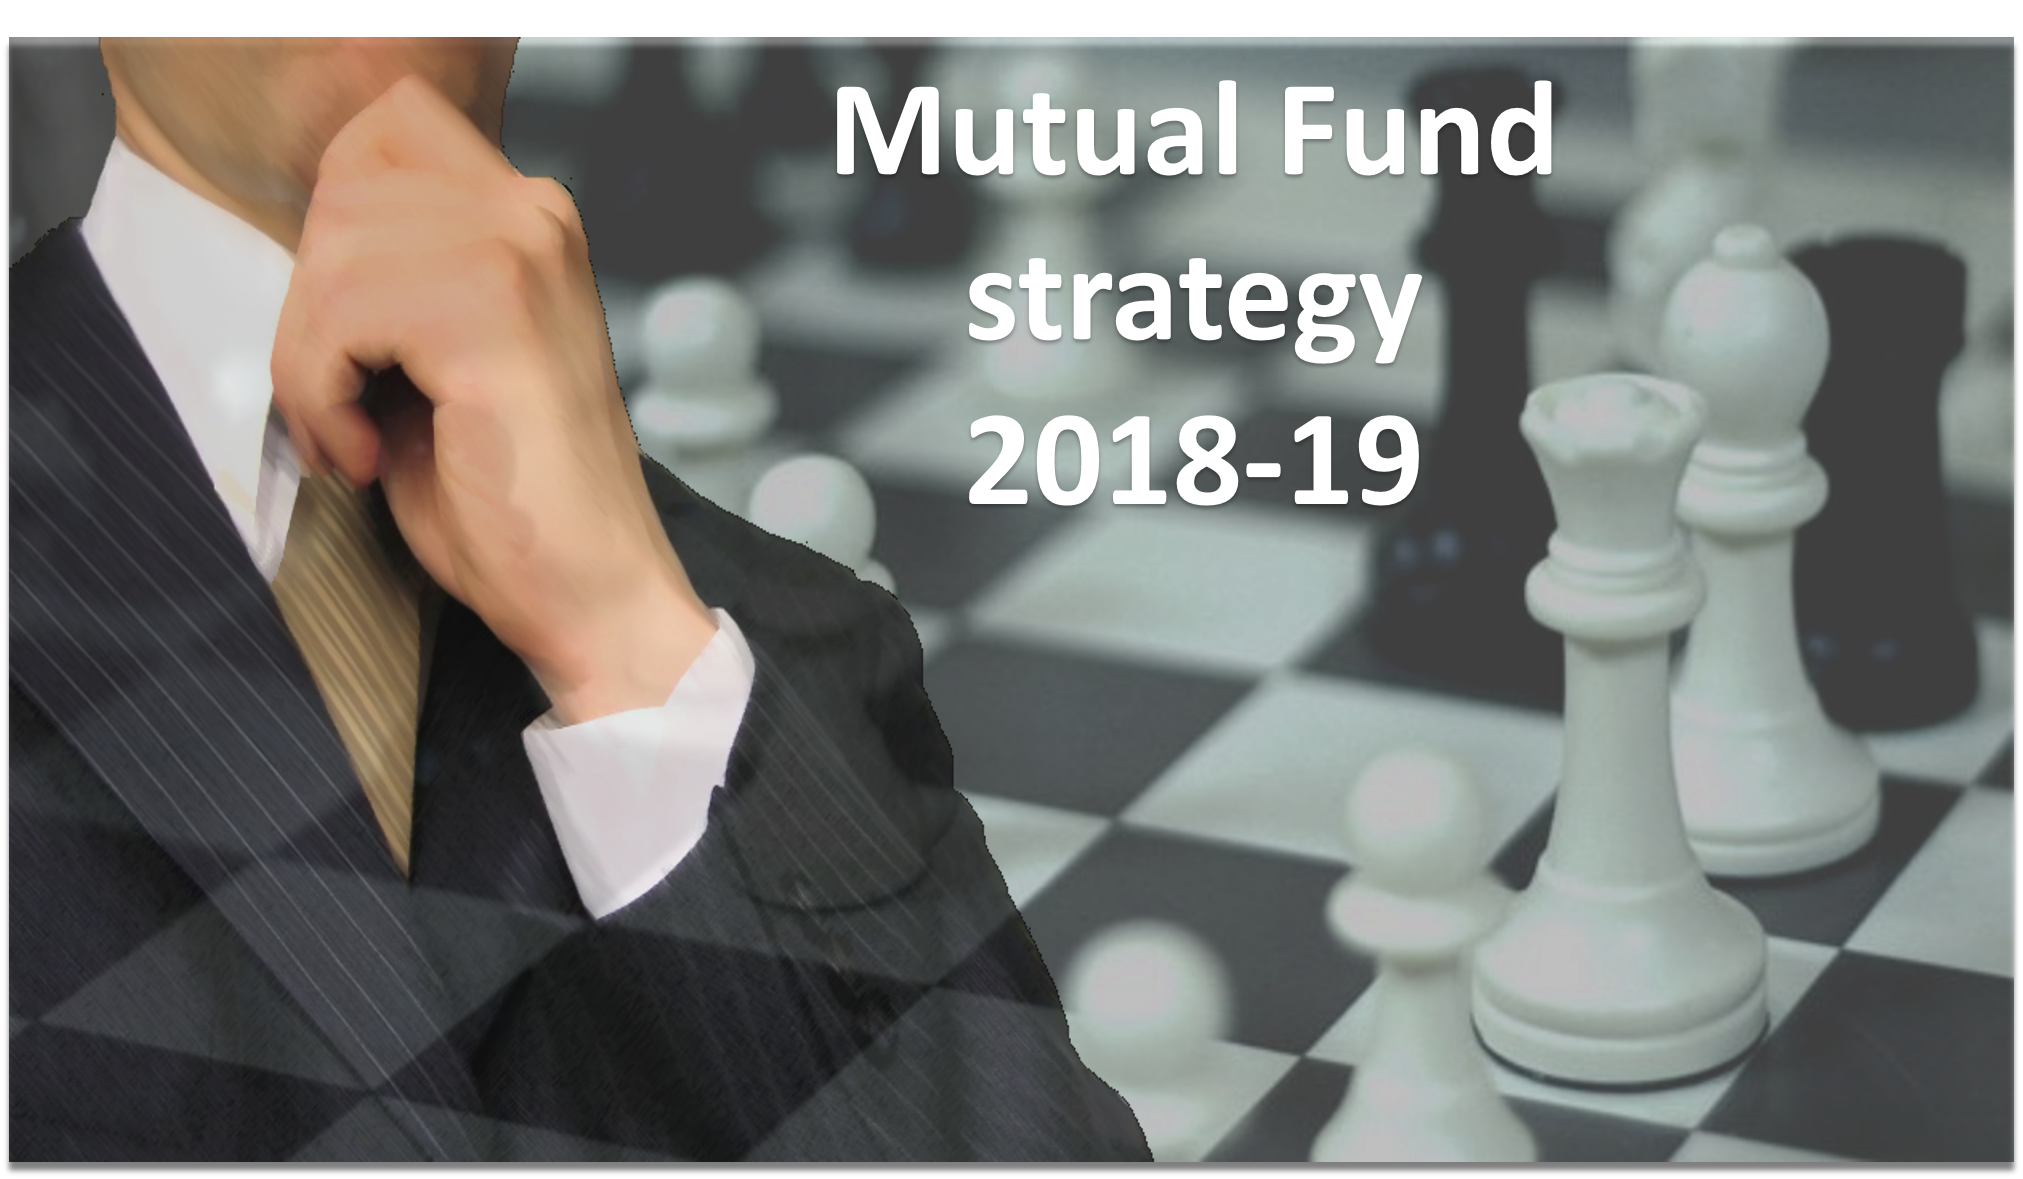 Mutual Fund strategy